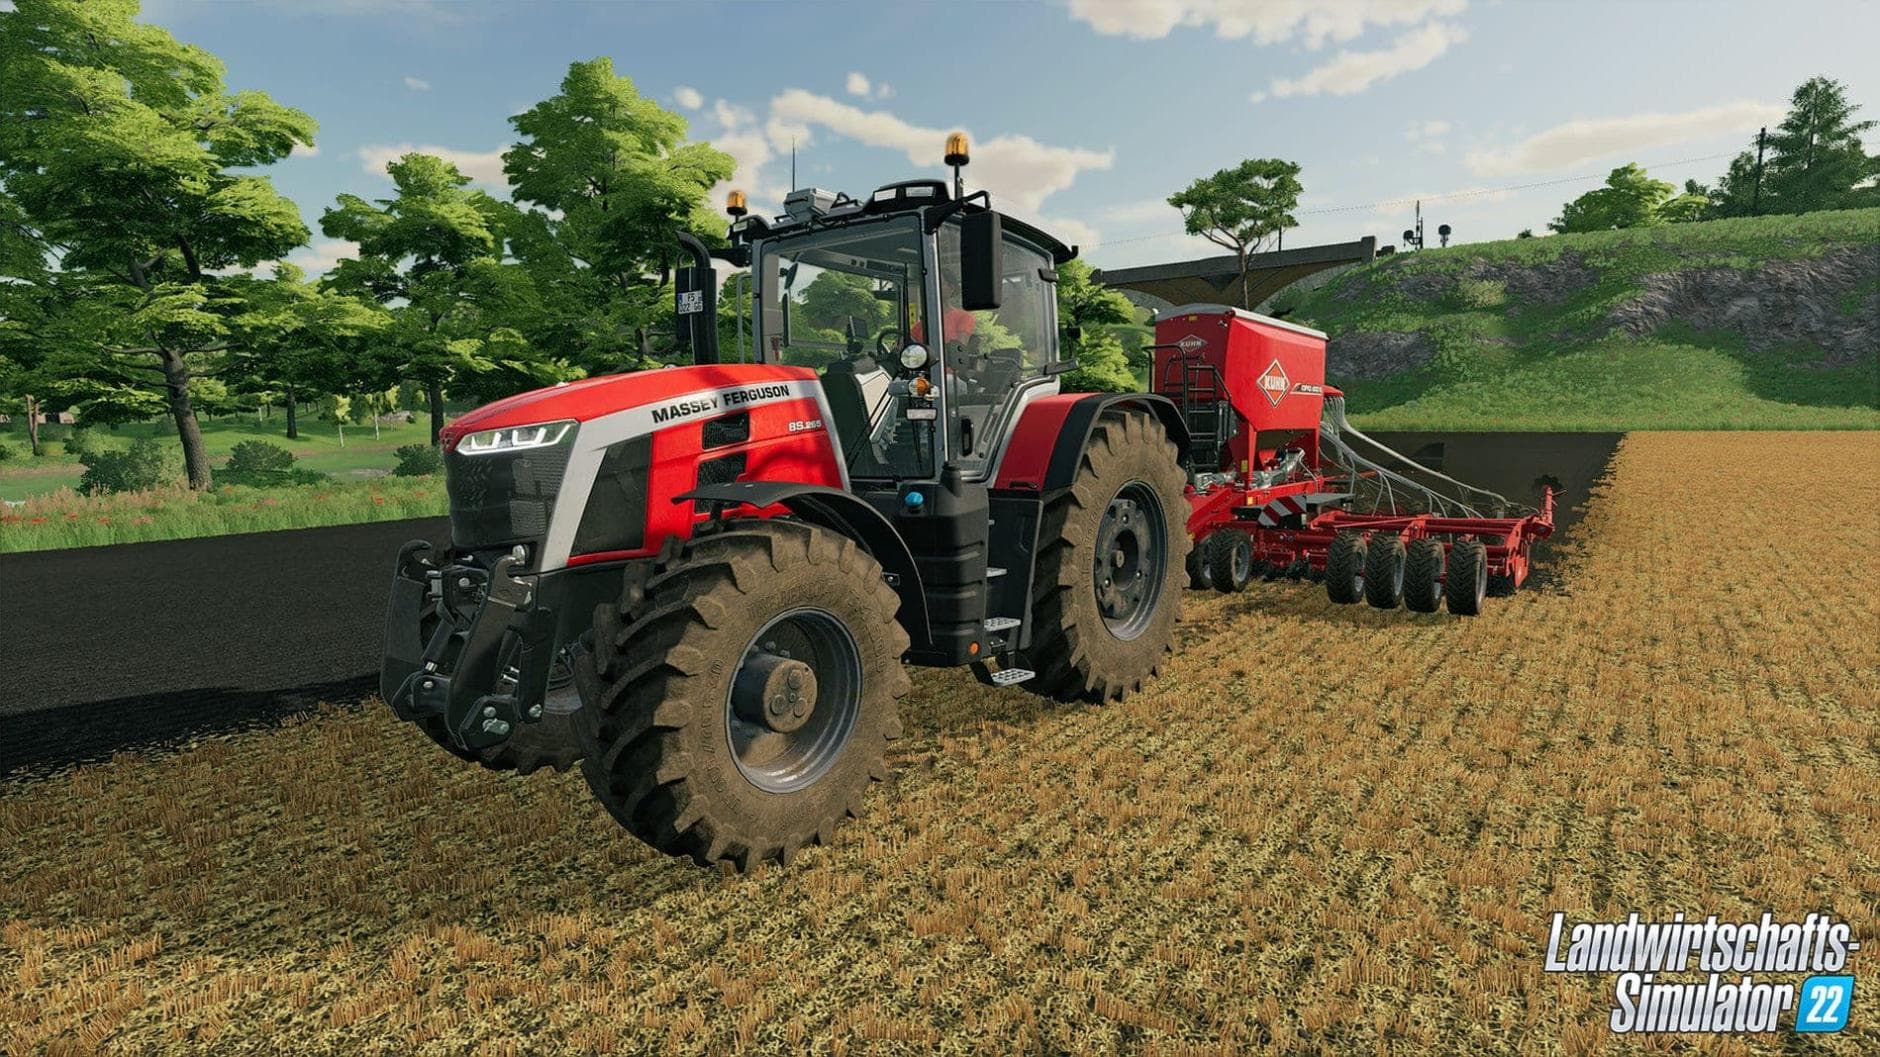 Landwirtschafts-Simulator 22 angekündigt: Termin und neue Features